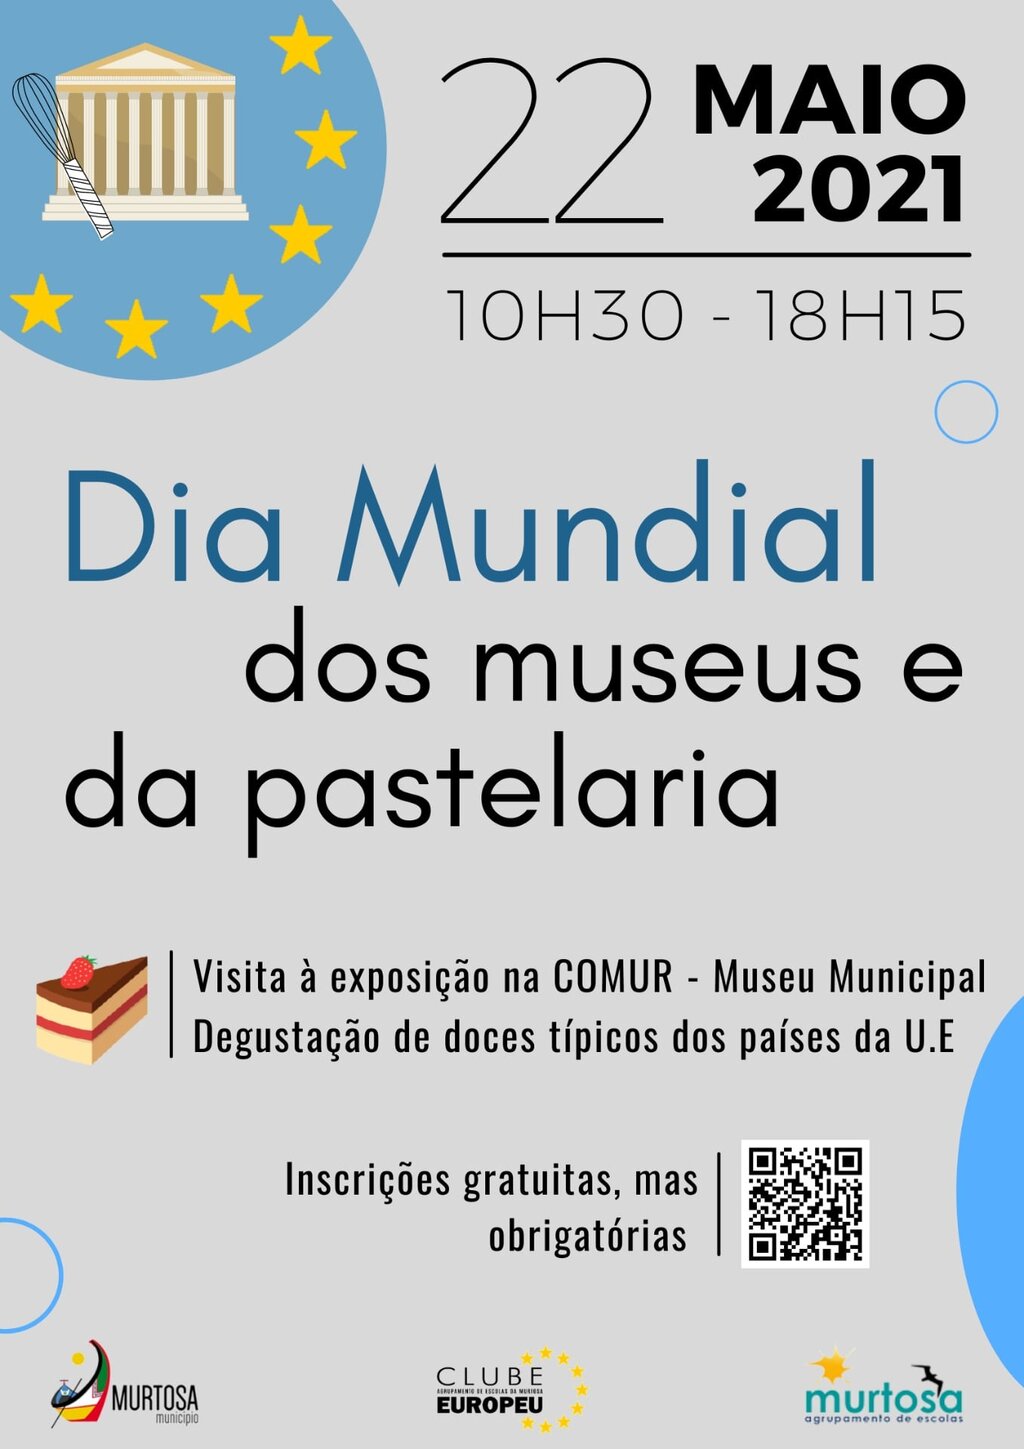  COMUR - MUSEU MUNICIPAL COMEMORA DIA MUNDIAL DOS MUSEUS E DA PASTELARIA COM DEGUSTAÇÃO DE DOÇARI...